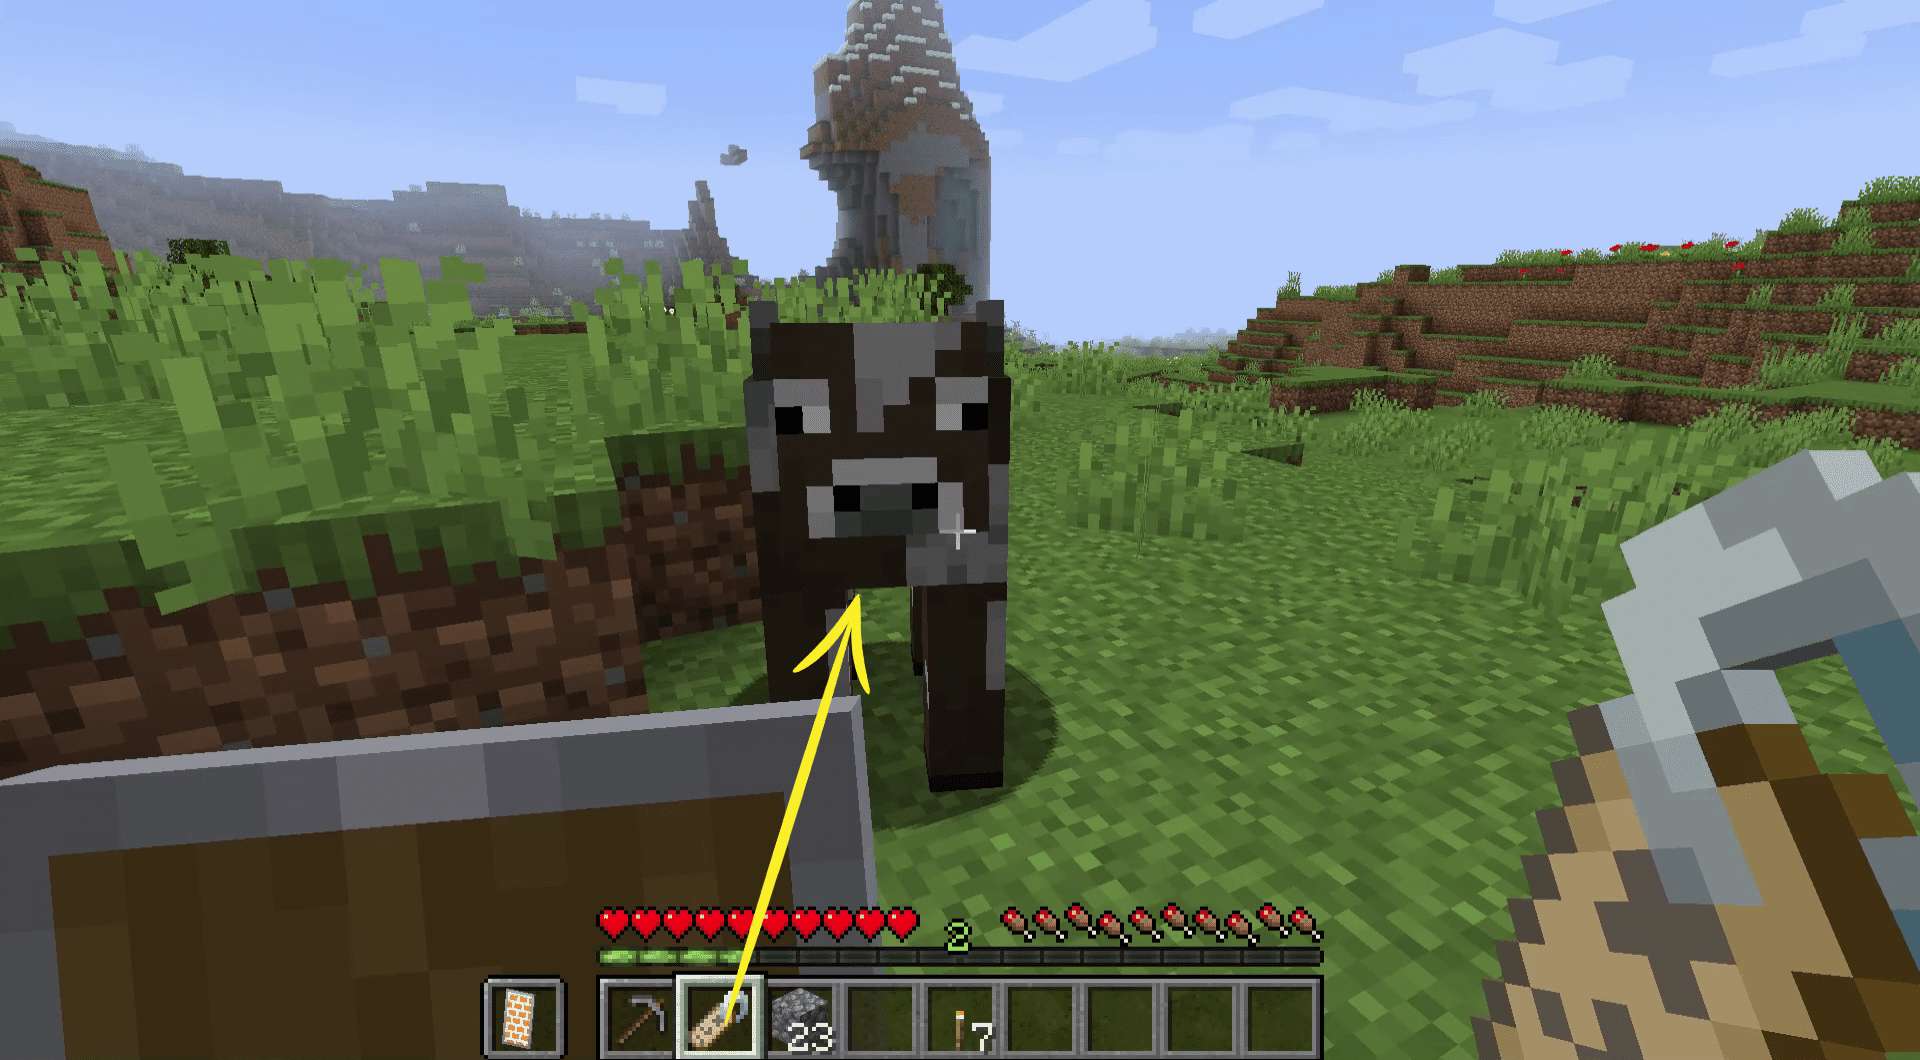 Χρησιμοποιώντας μια ετικέτα ονόματος σε μια αγελάδα στο Minecraft.